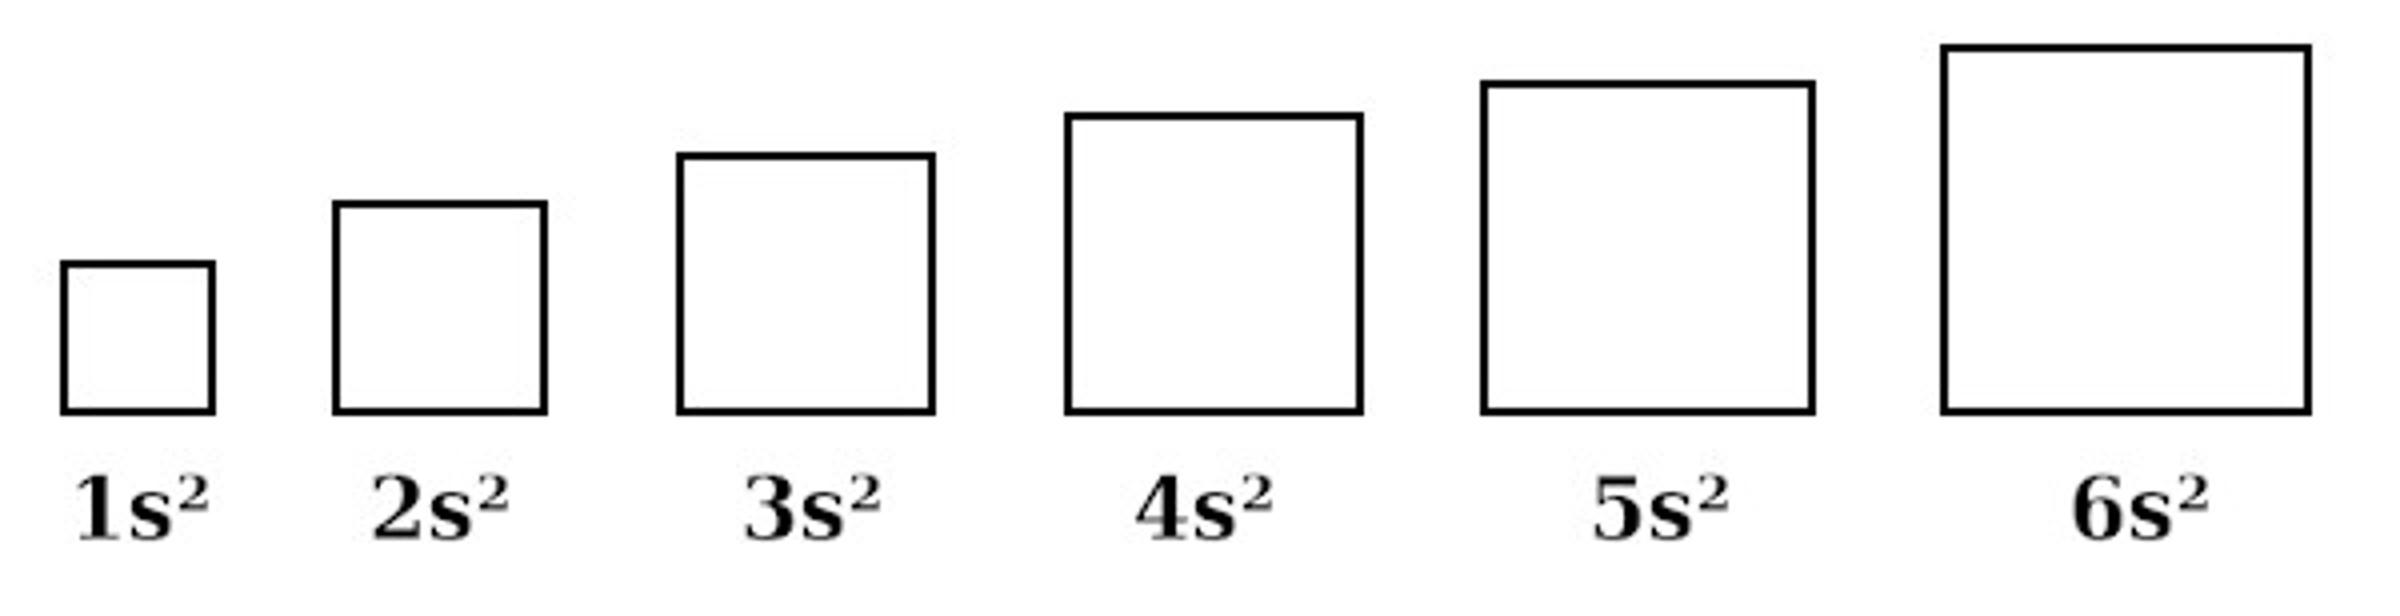 Kwadraty o powierzchniach: 1s, 2s, 3s, 4s, 5s, 6s